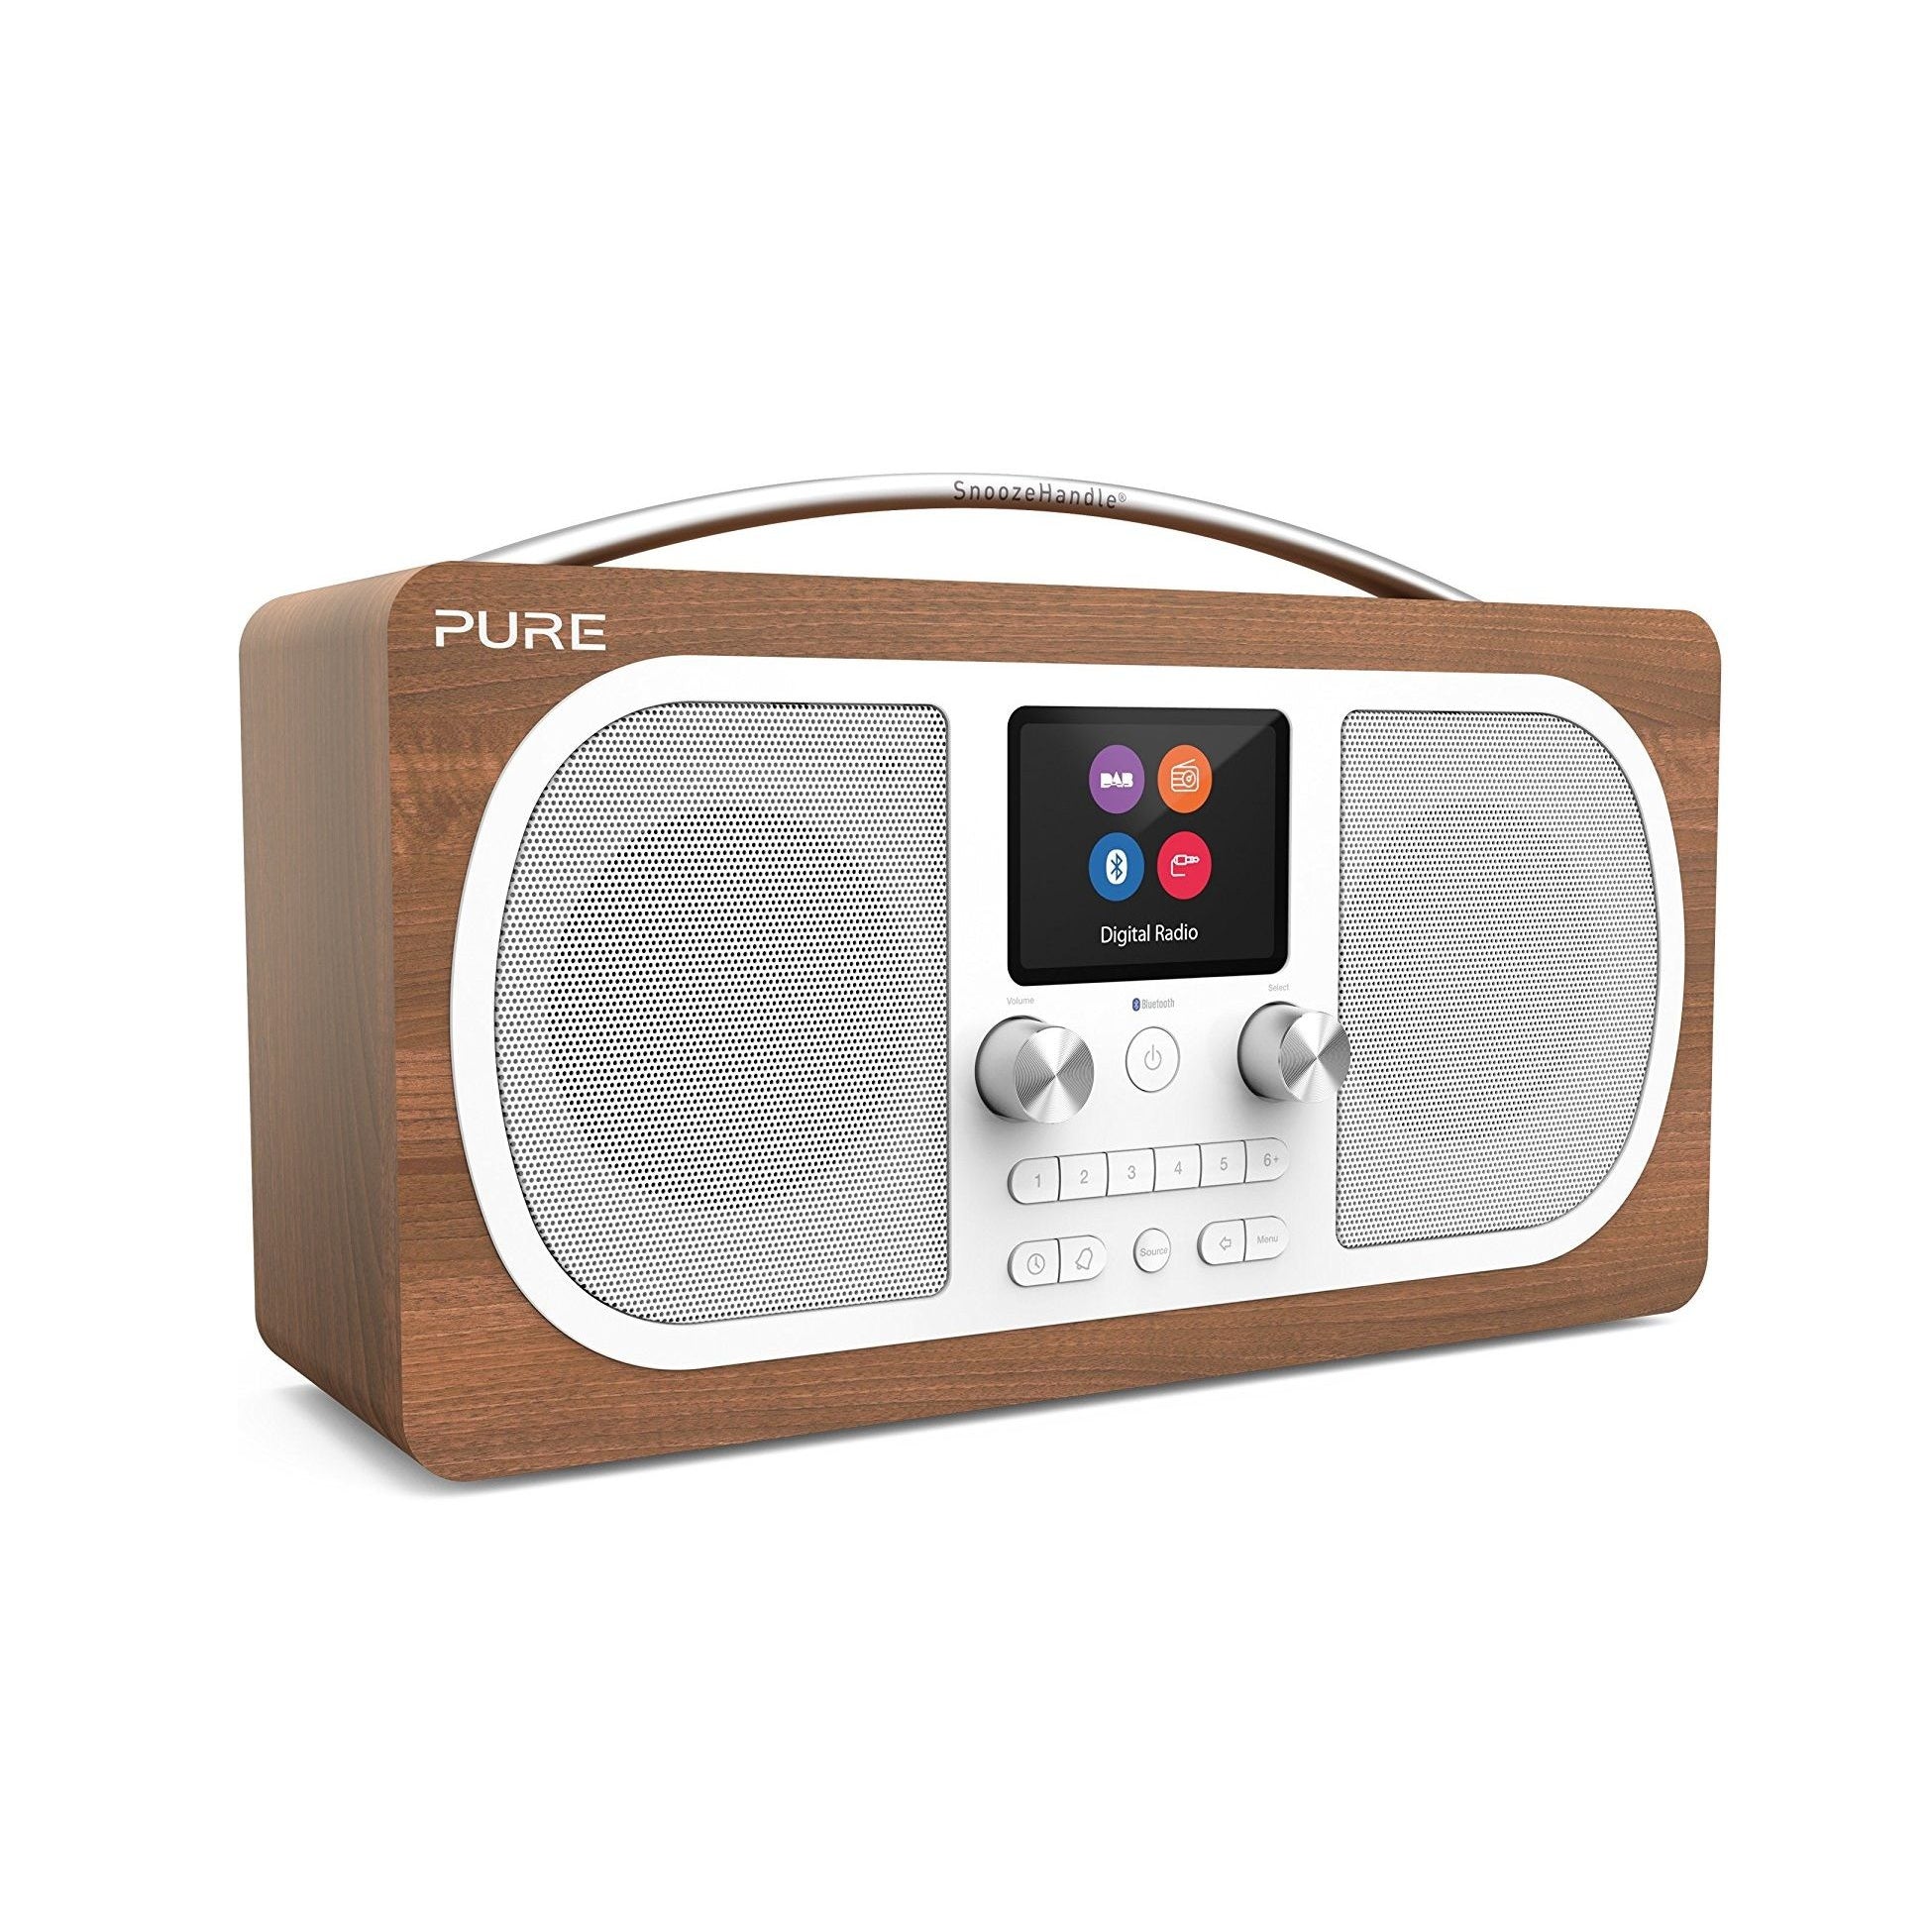 Pure Evoke H6 DAB/DAB+/FM Stereo Bluetooth Radio, Walnut - Refurbished Pristine